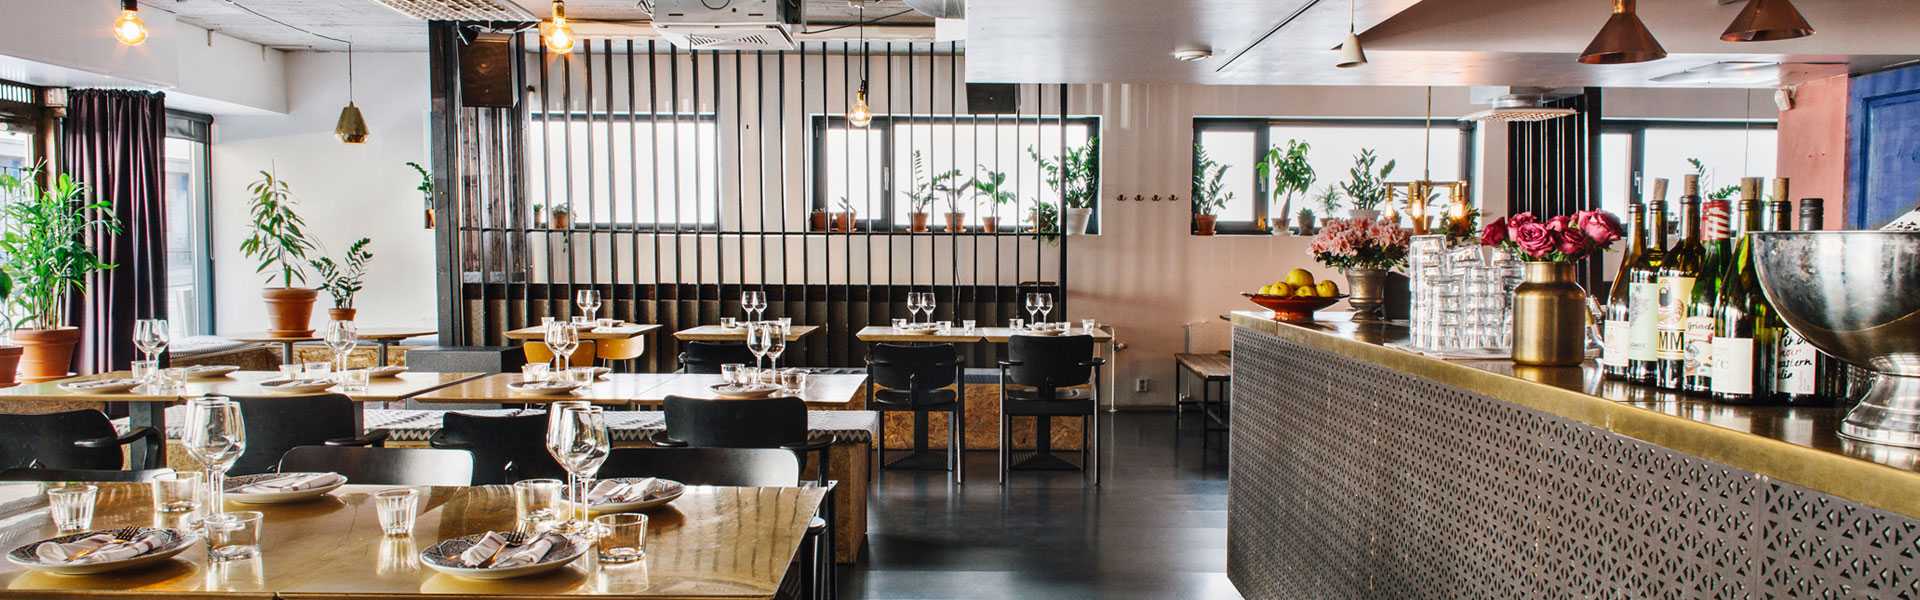 Хотя в Хельсинки полно интересных больших и маленьких кафе, наиболее популярным местом в последнее время стал именно ресторан Sandro.